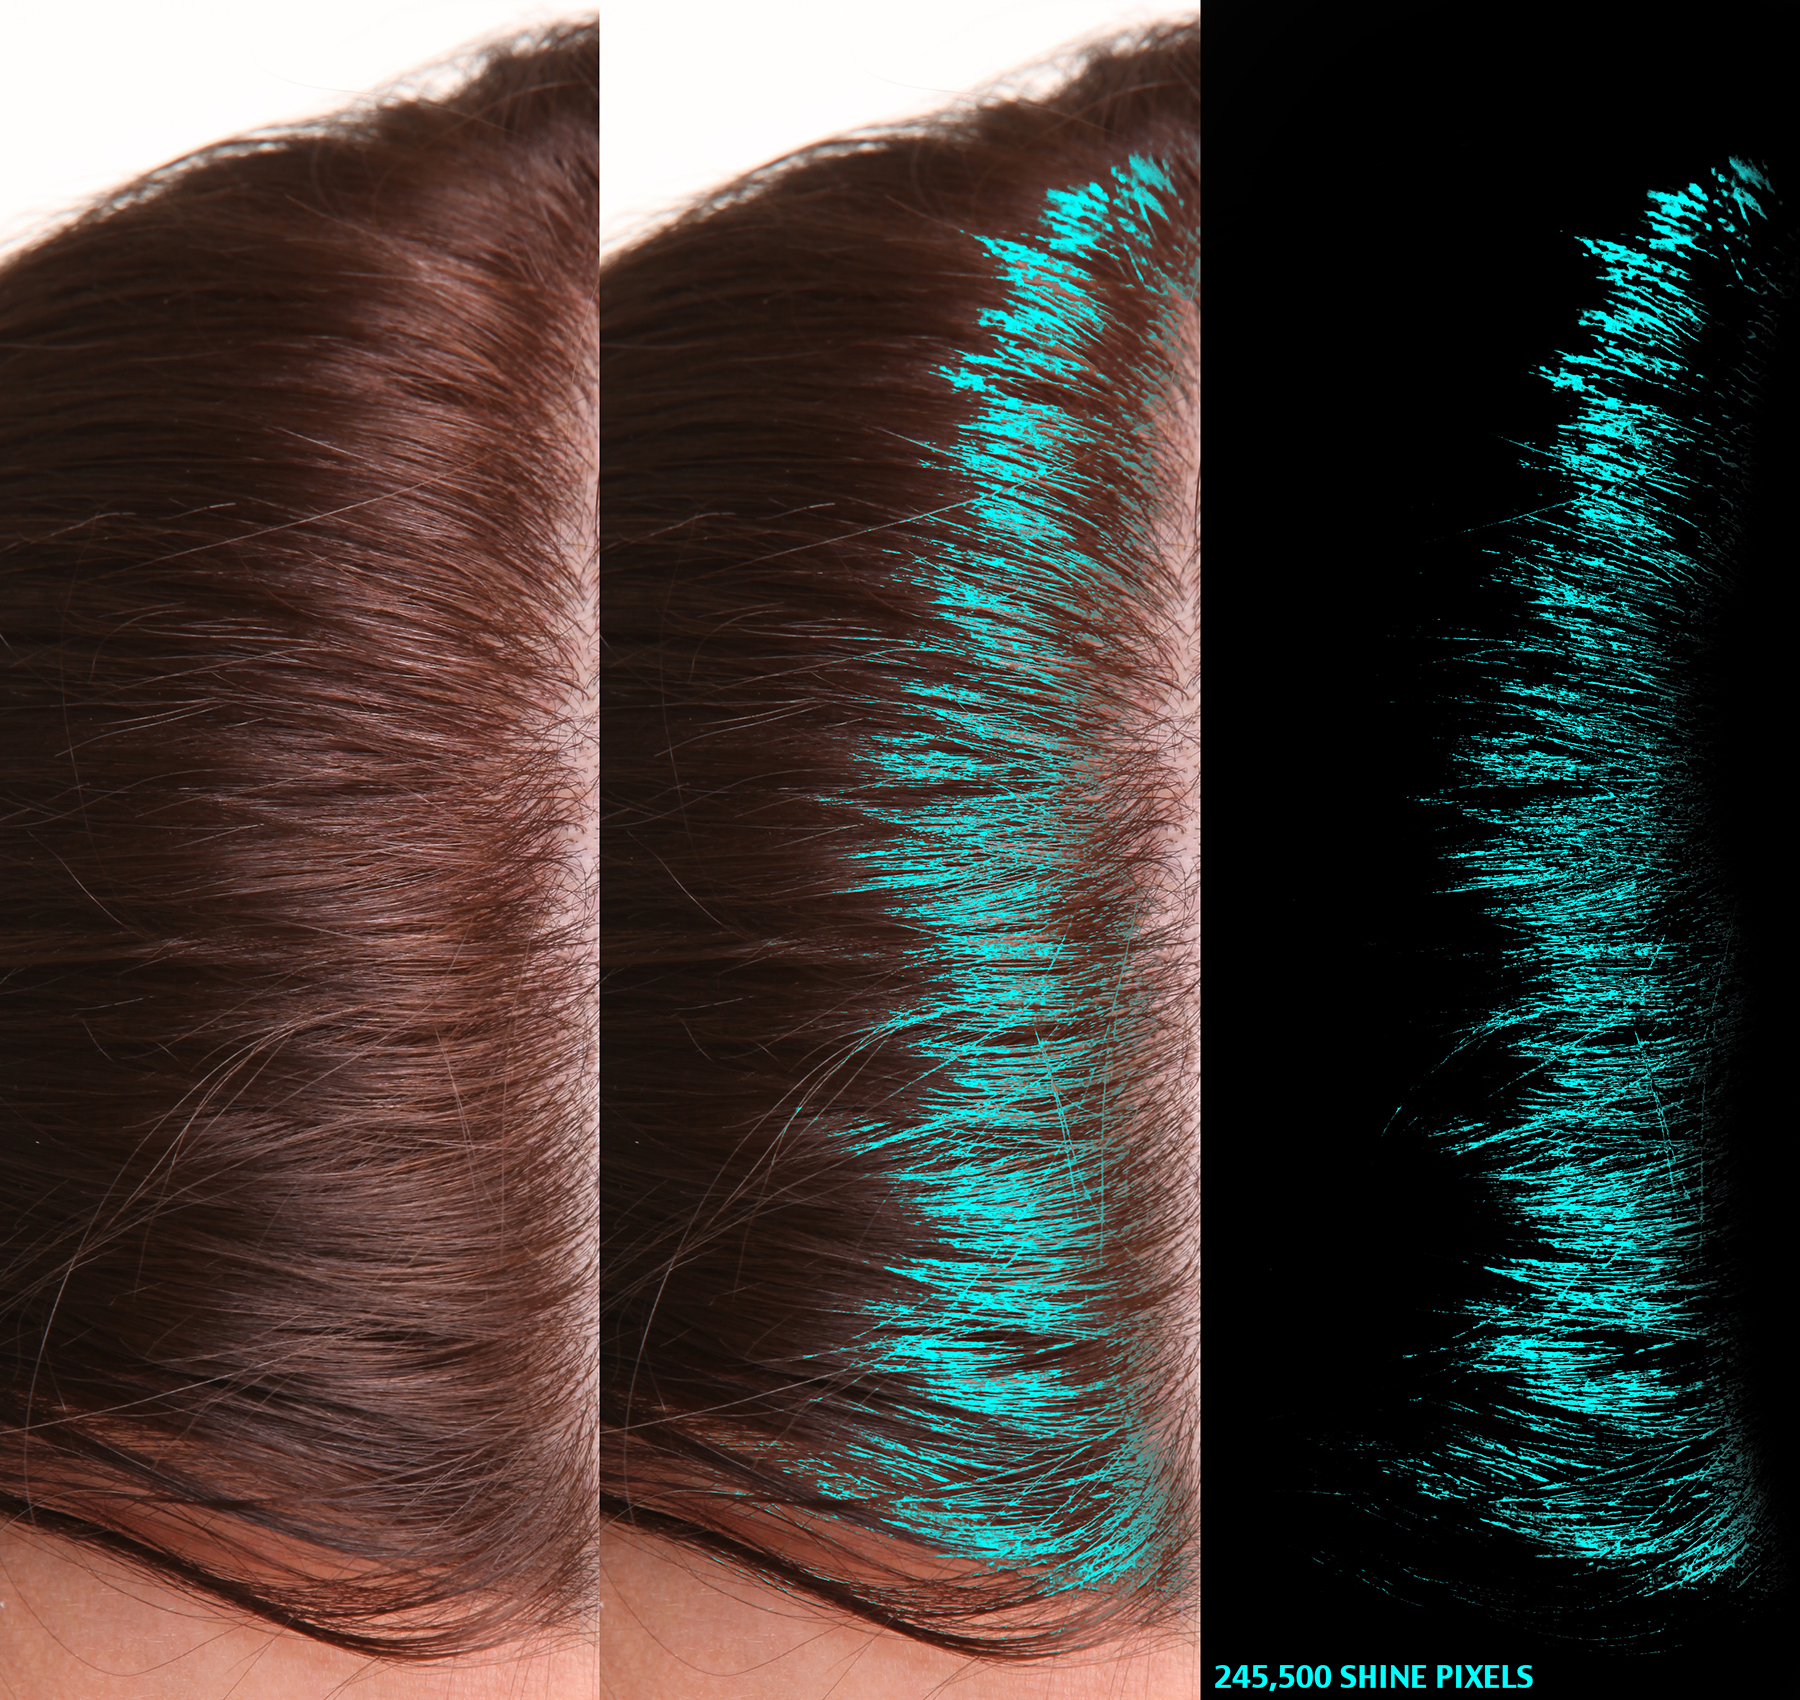 Hair Density Test - SHI05 Hair Shine PhGx